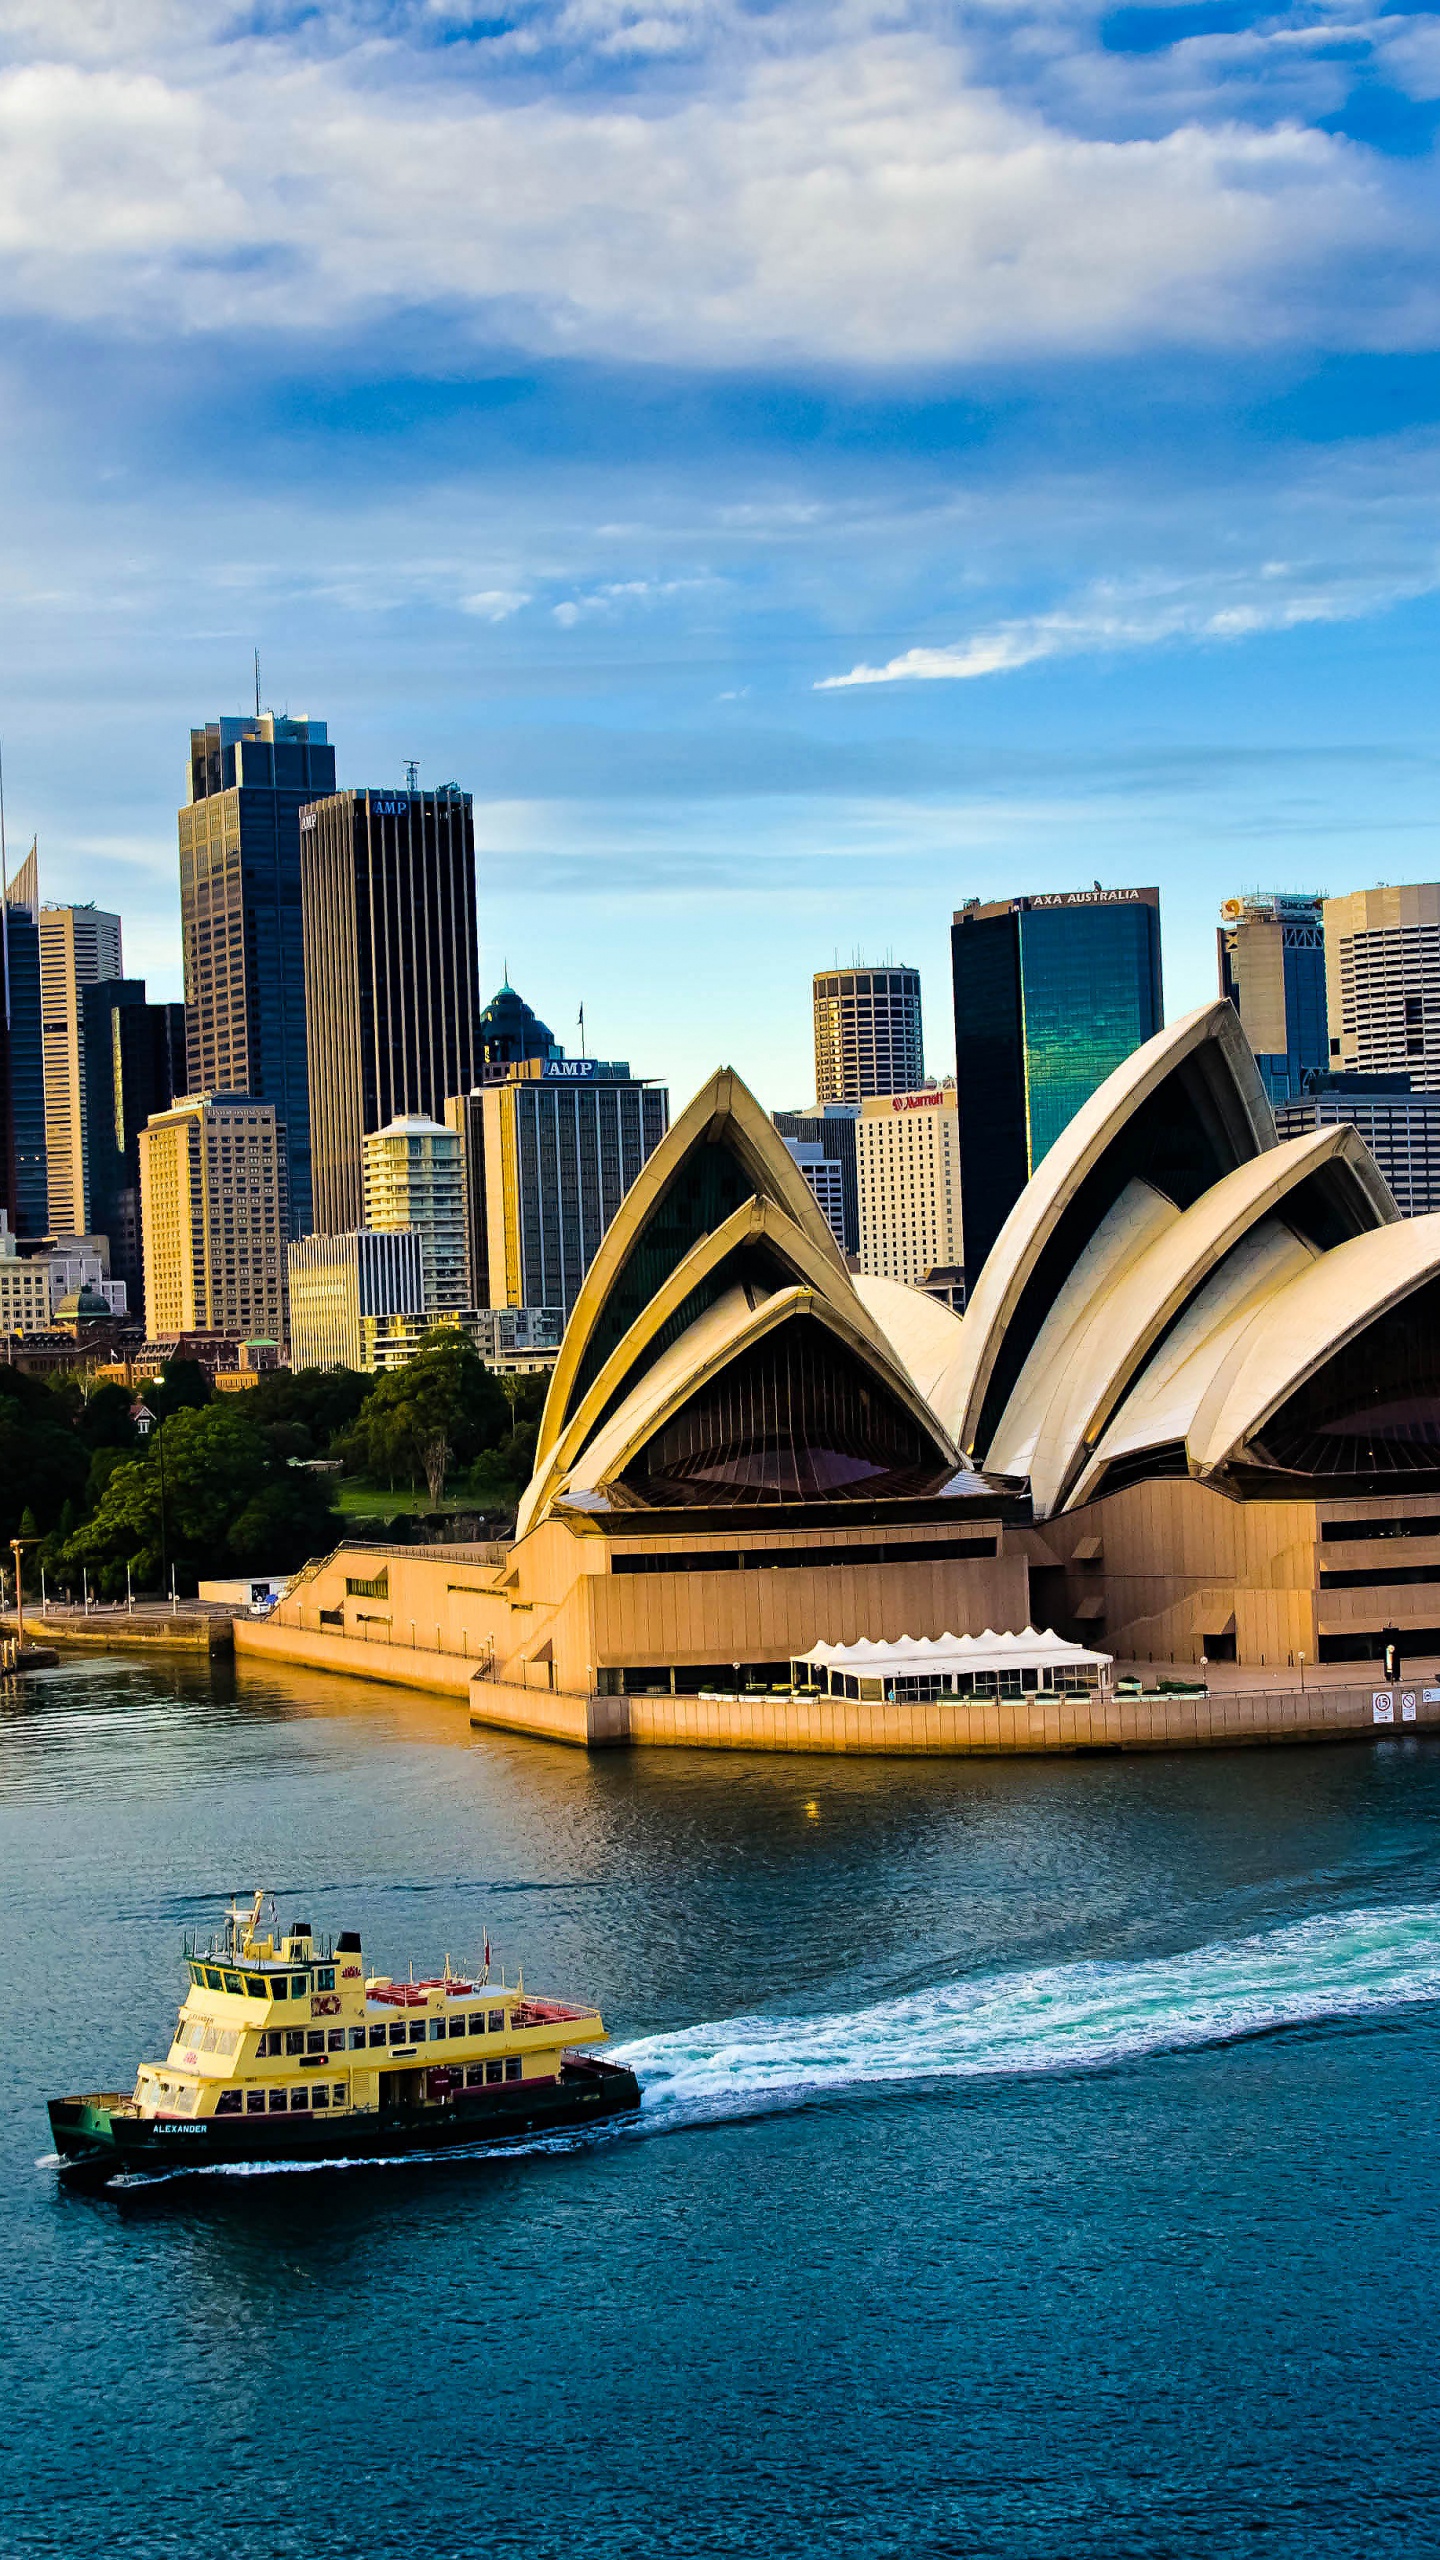 悉尼歌剧院, 歌剧院, 水运, 城市景观, 城市 壁纸 1440x2560 允许